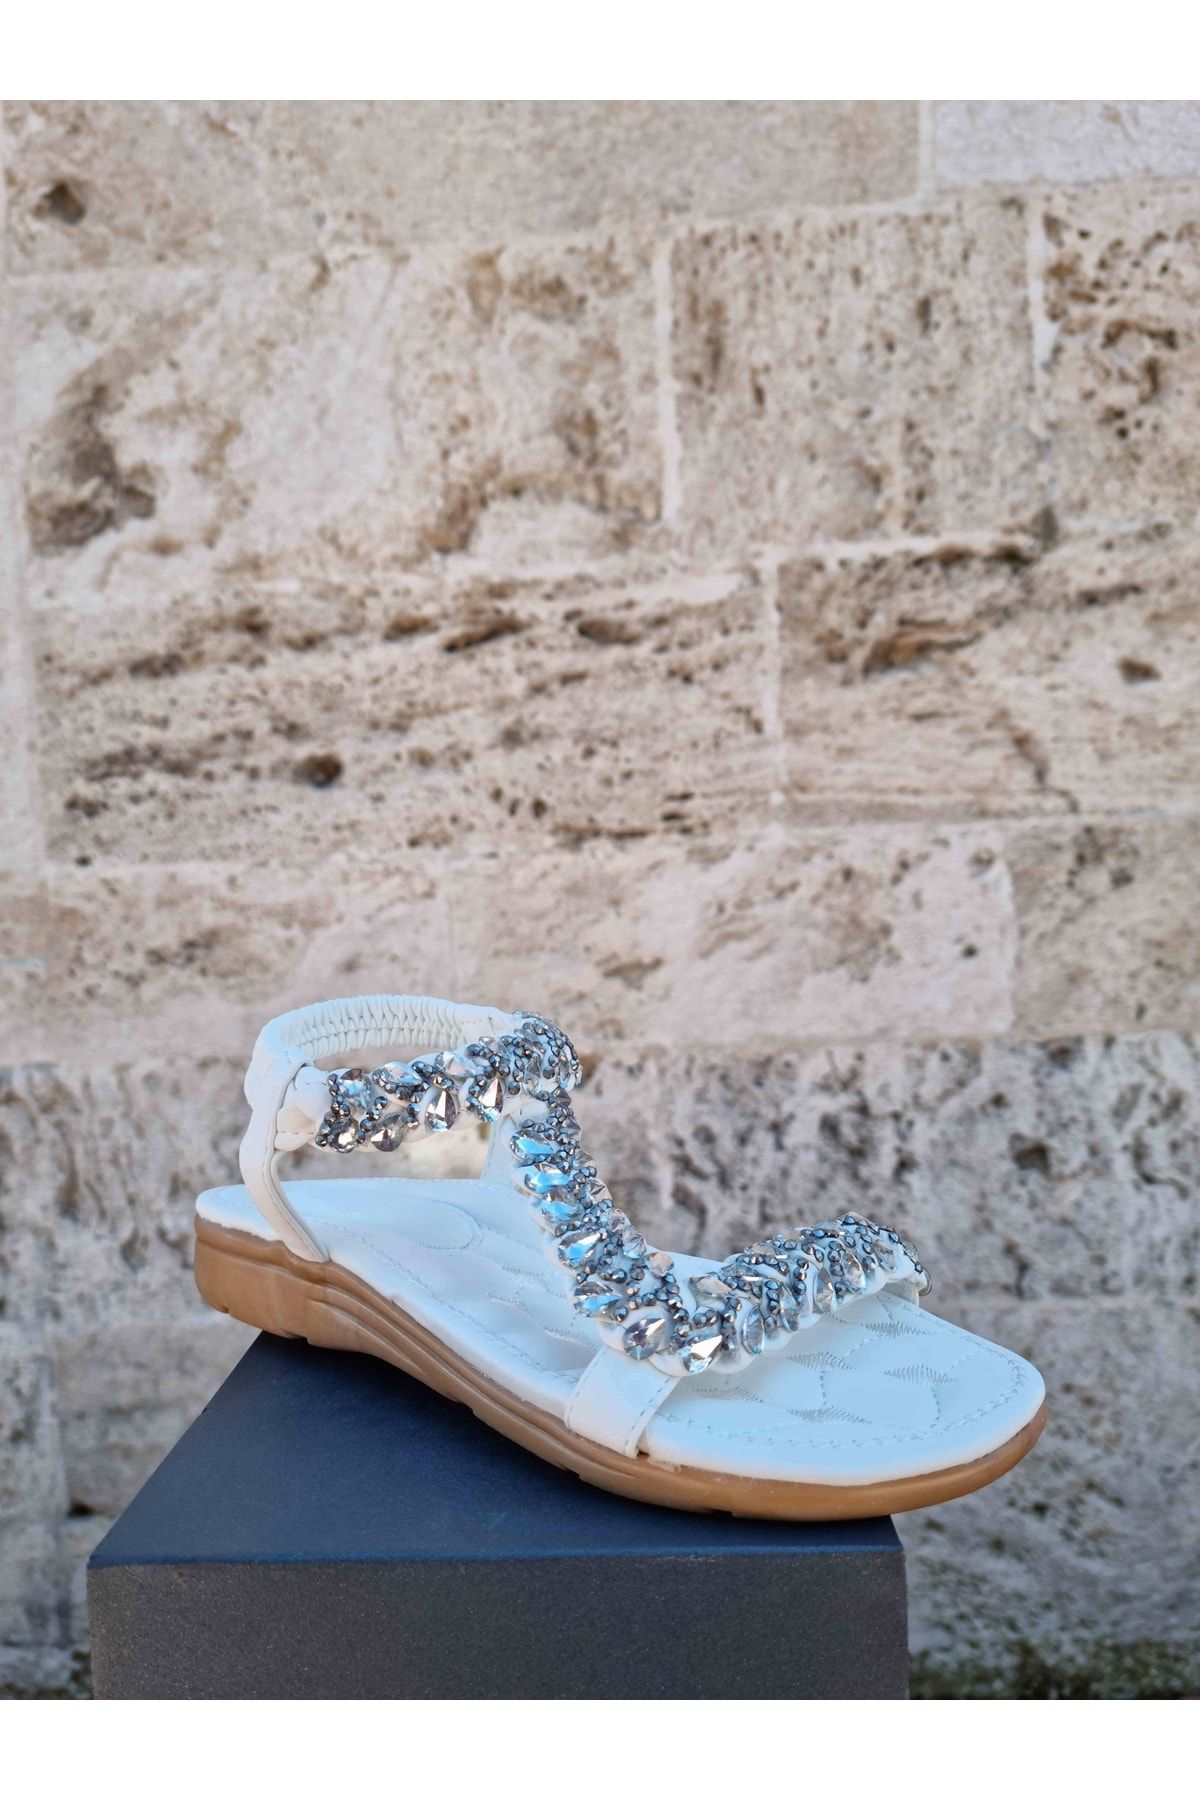 Guja Kadın Topuk Destekli Yazlık Taşlı Sandalet